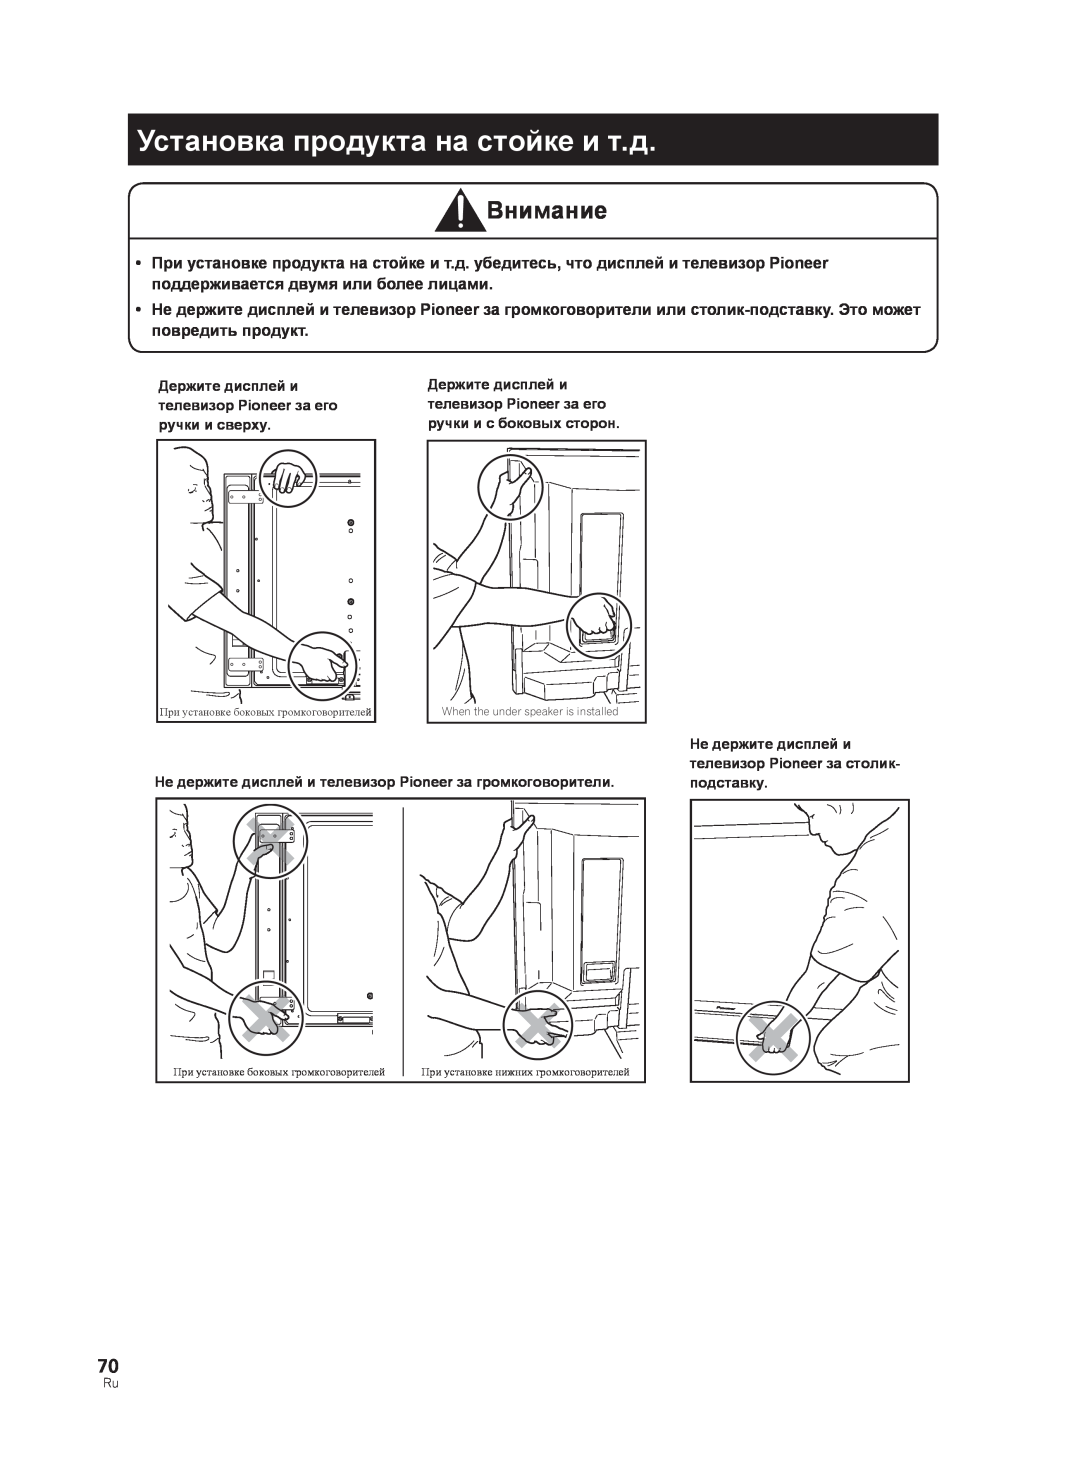 Pioneer PDK-TS33A, KRP-TS02 manual Установка продукта на стойке и т.д, Внимание 